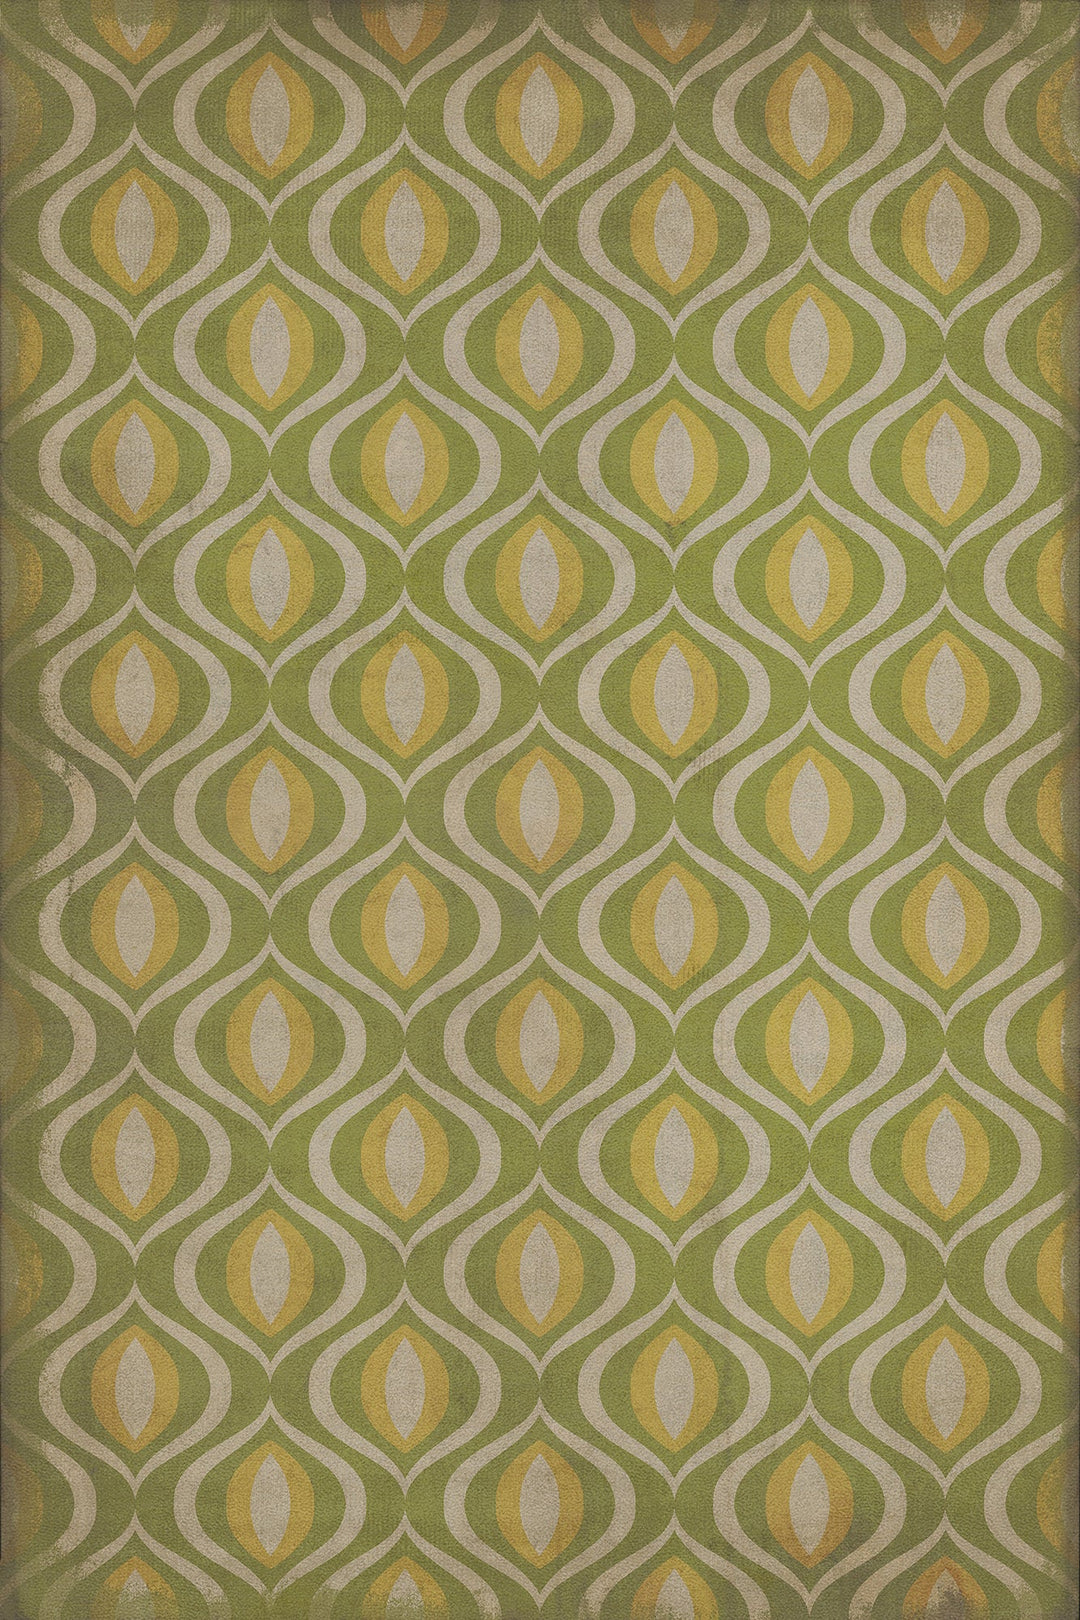 Vintage Vinyl Floorcloth Rug (Classic Pattern 15 Eye of Newt)